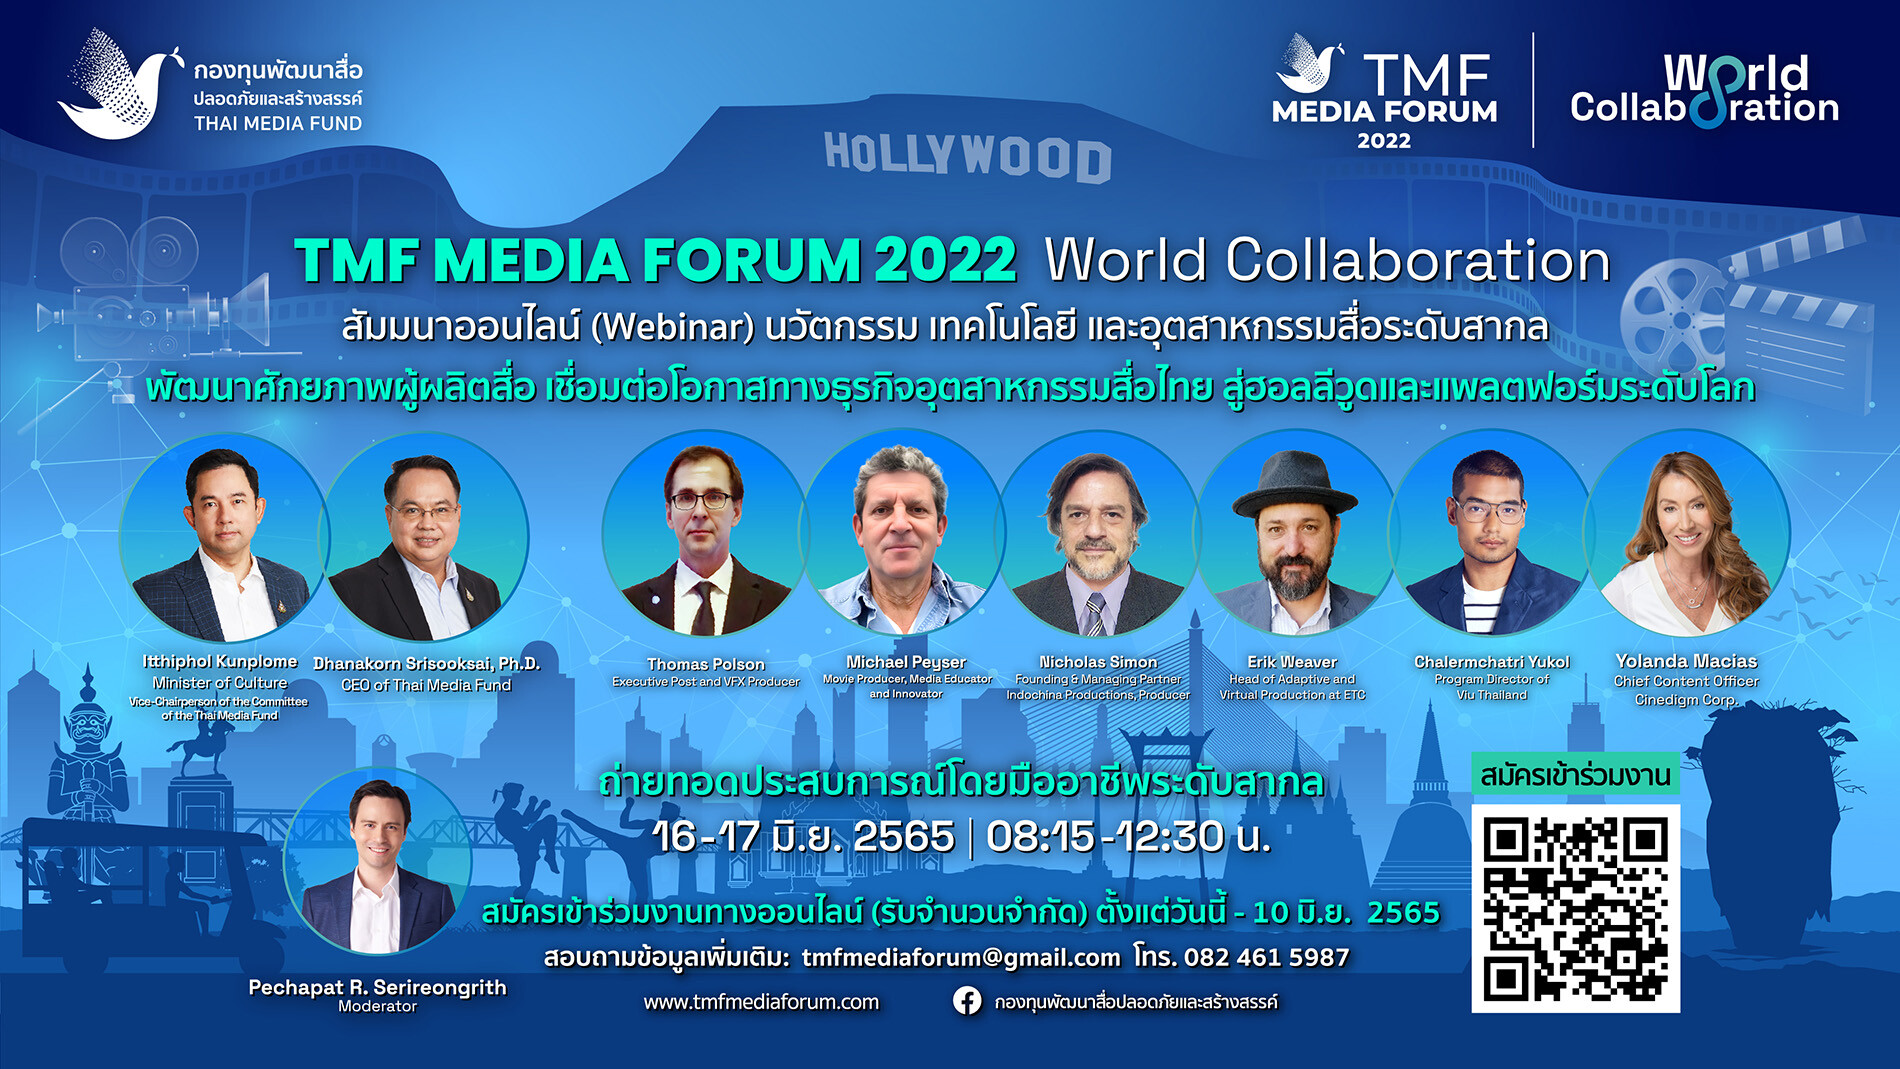 "กองทุนสื่อ"  จัดงานสัมมนาออนไลน์(webinar) ระดับโลกครั้งแรกในไทย  TMF Media Forum 2022 : World Collaboration พัฒนาศักยภาพผู้ผลิตสื่อ เชื่อมต่อโอกาสทางธุรกิจอุตสาหกรรมสื่อไทยสู่ "ฮอลลีวูด"